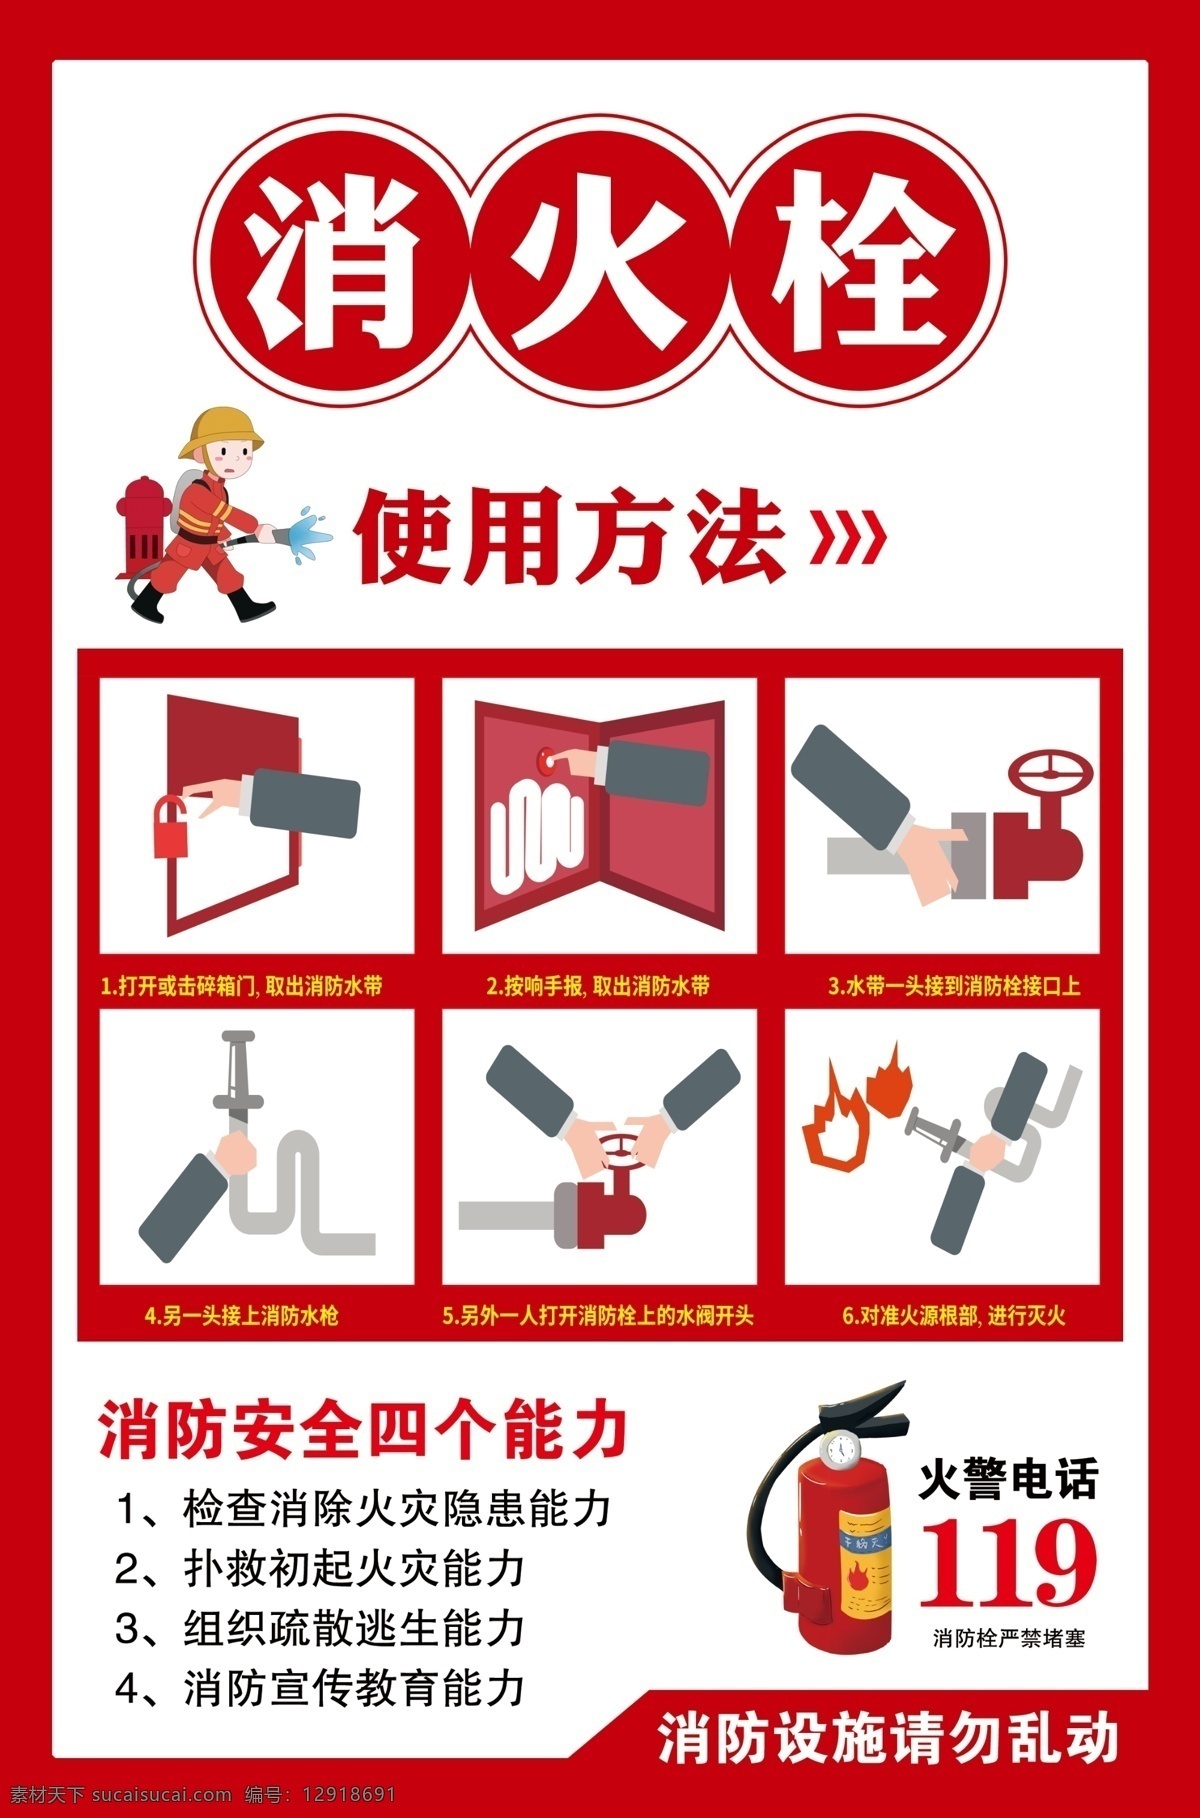 消火栓图片 消防栓 卡通消防人 灭火器 四个能力 消防电话 使用方法 分层